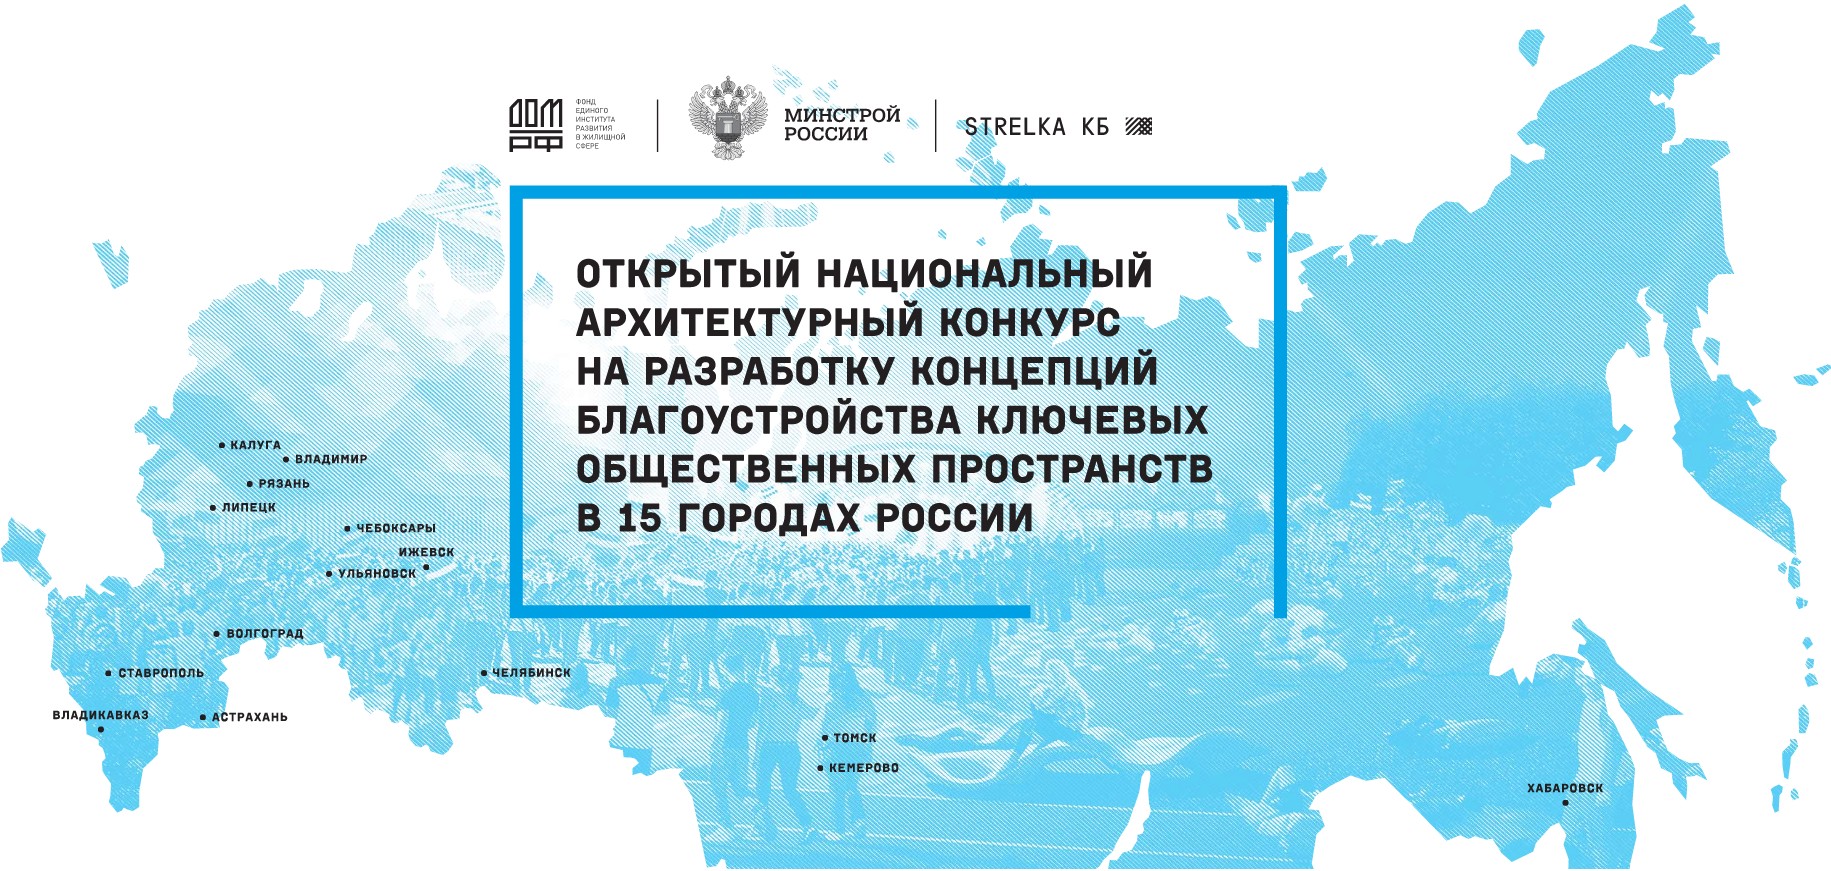 открытый национальный архитектурный конкурс на разработку концепций благоустройства ключевых общественных пространств в 15 городах России